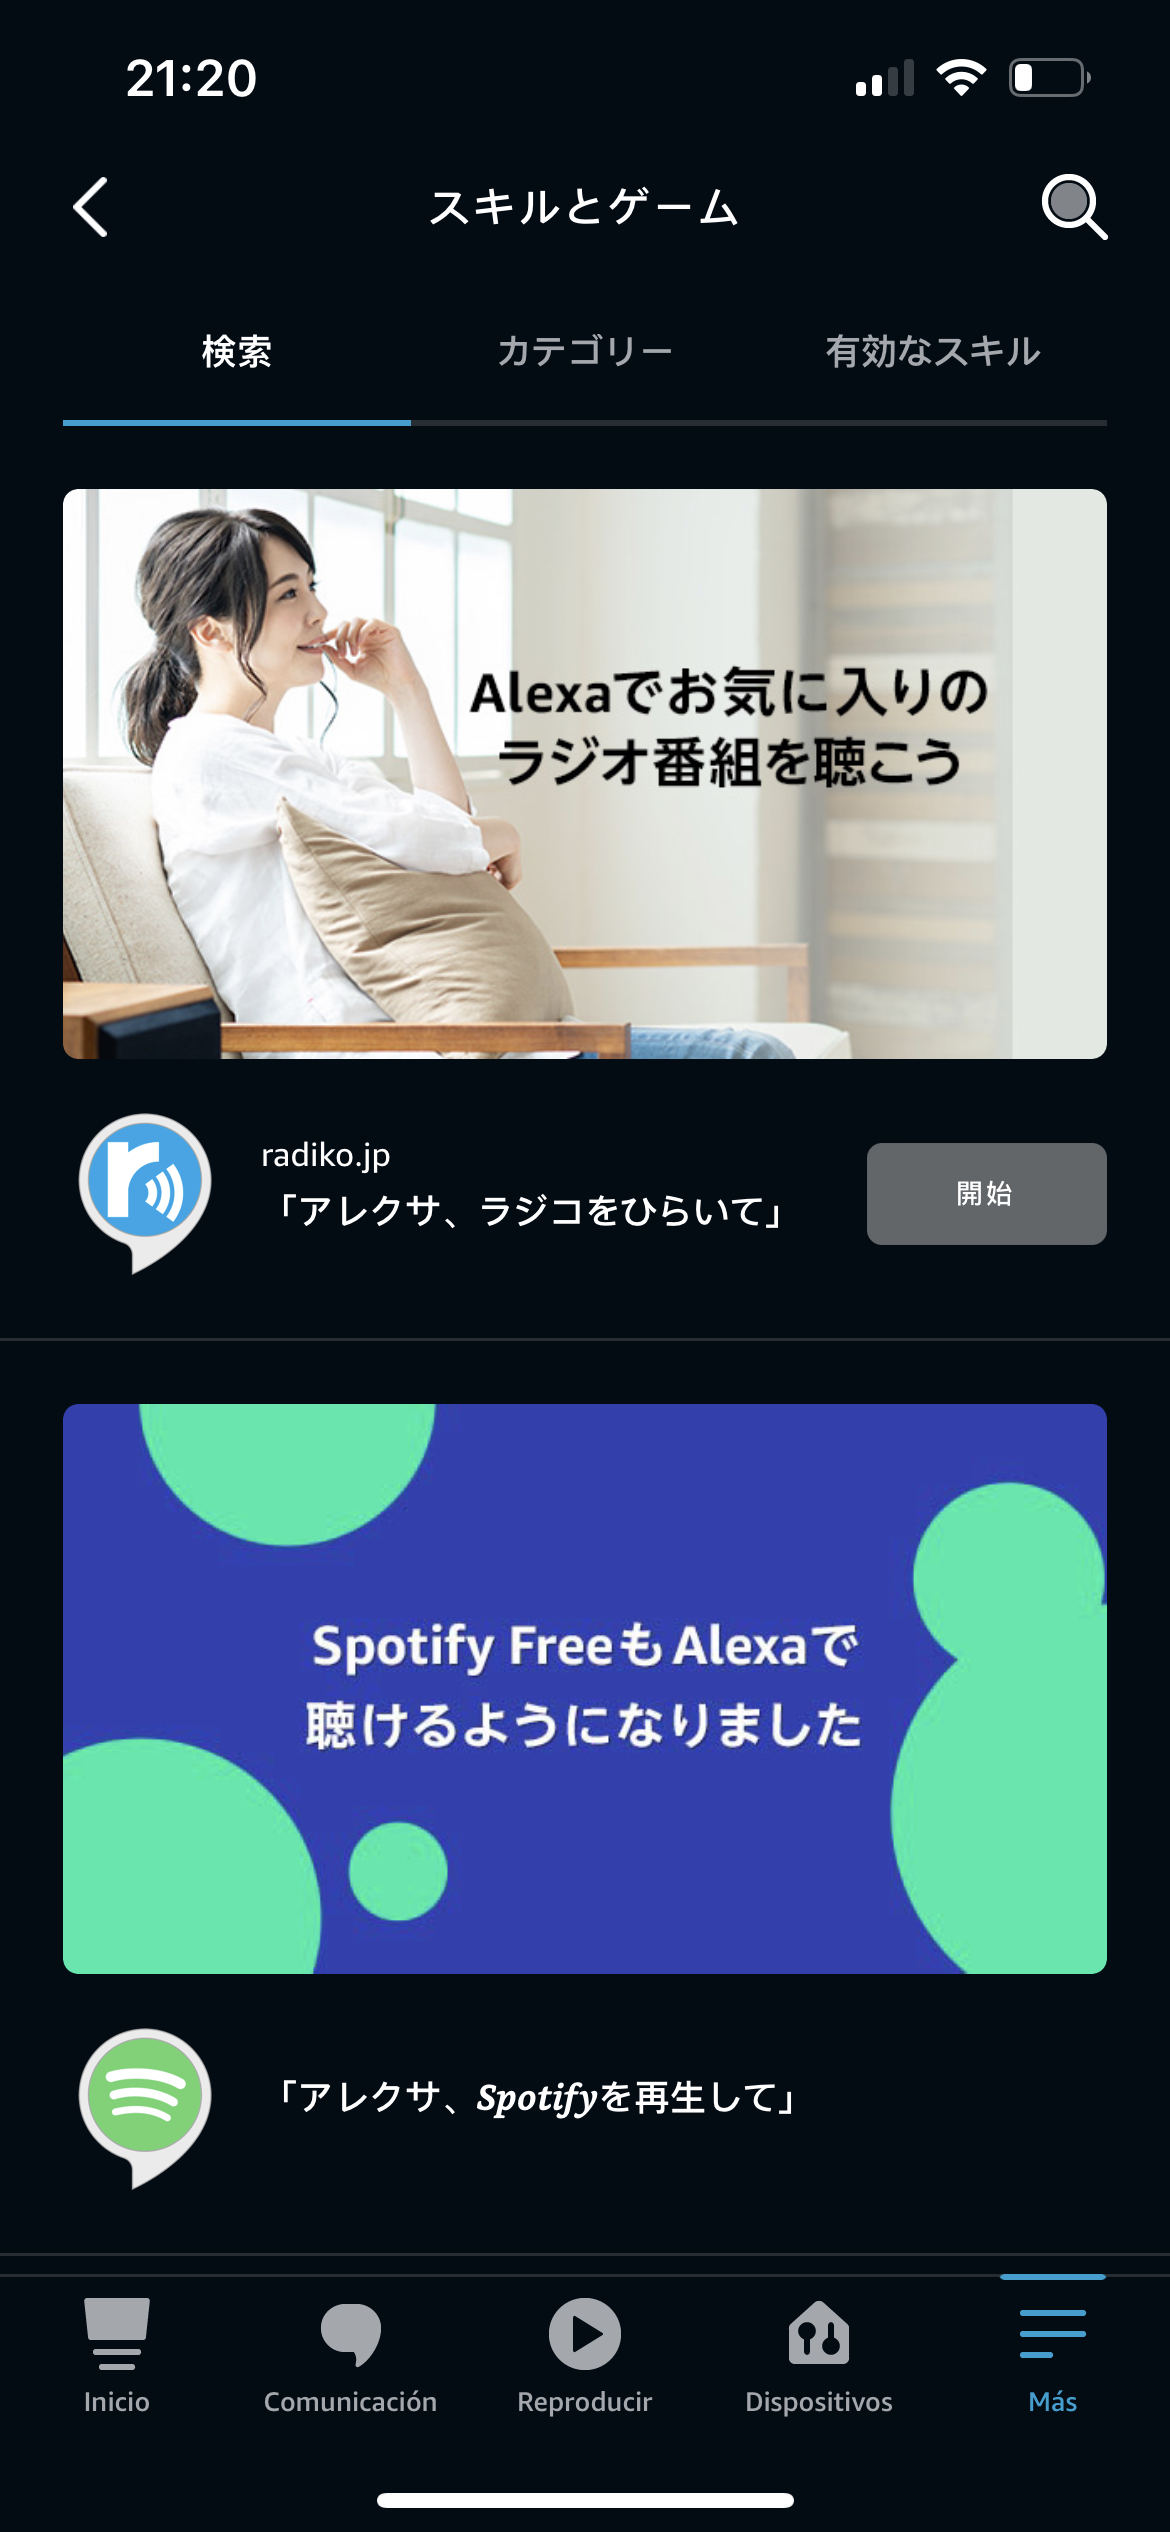 Examinar detenidamente Dependiente Dictar Problemas con Skills de Alexa (solo en japonés)